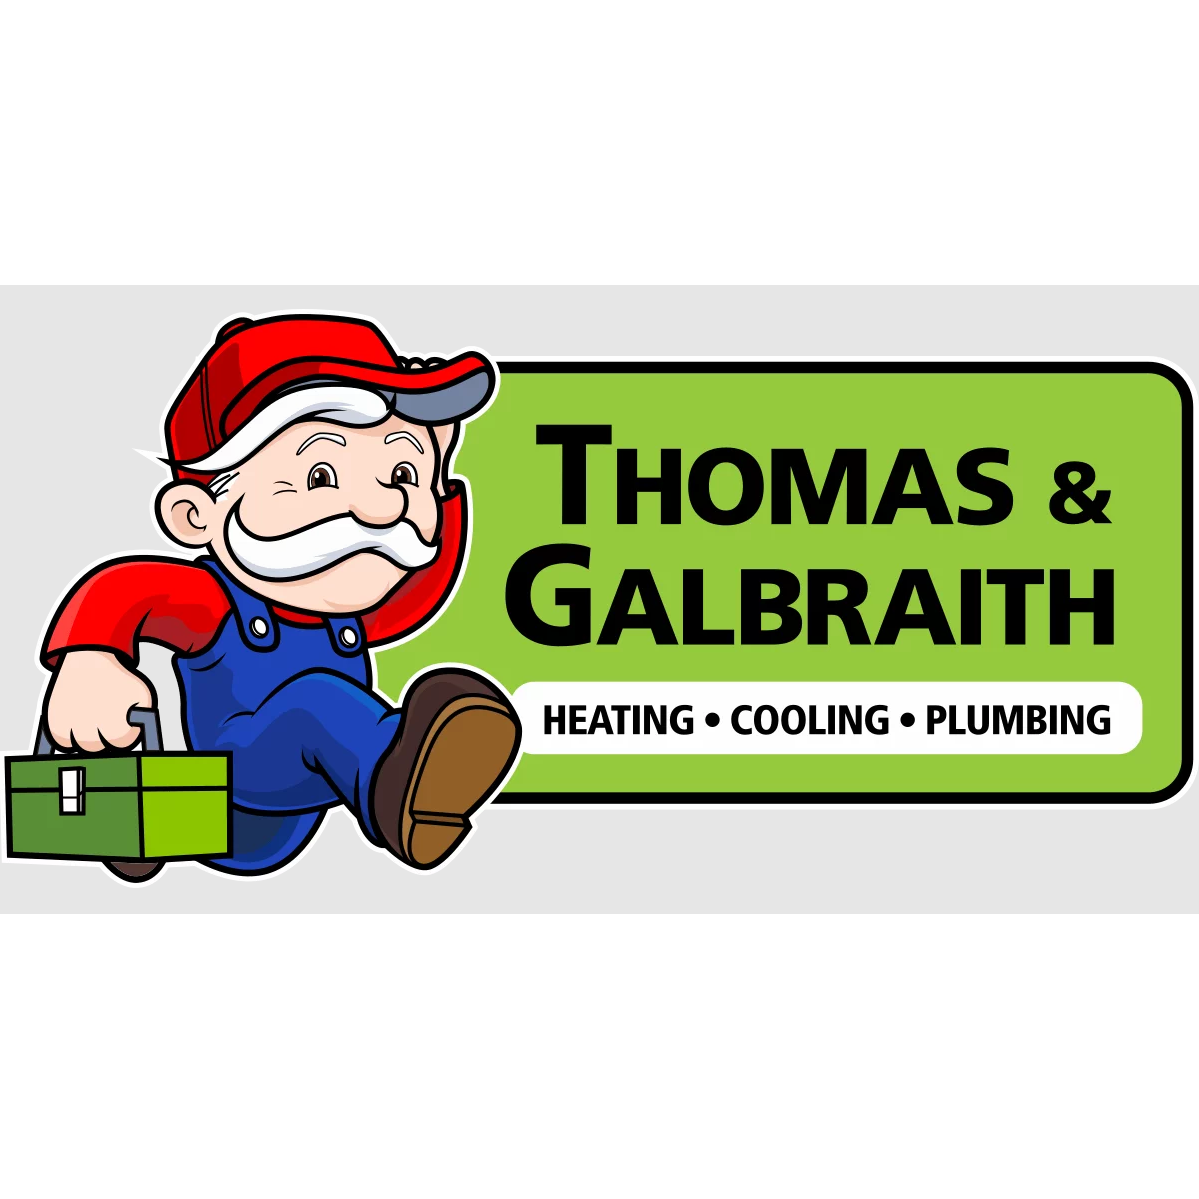 Thomas & Galbraith Heating, Cooling & Plumbing Thomas & Galbraith Heating, Cooling & Plumbing Dayton (937)345-0448